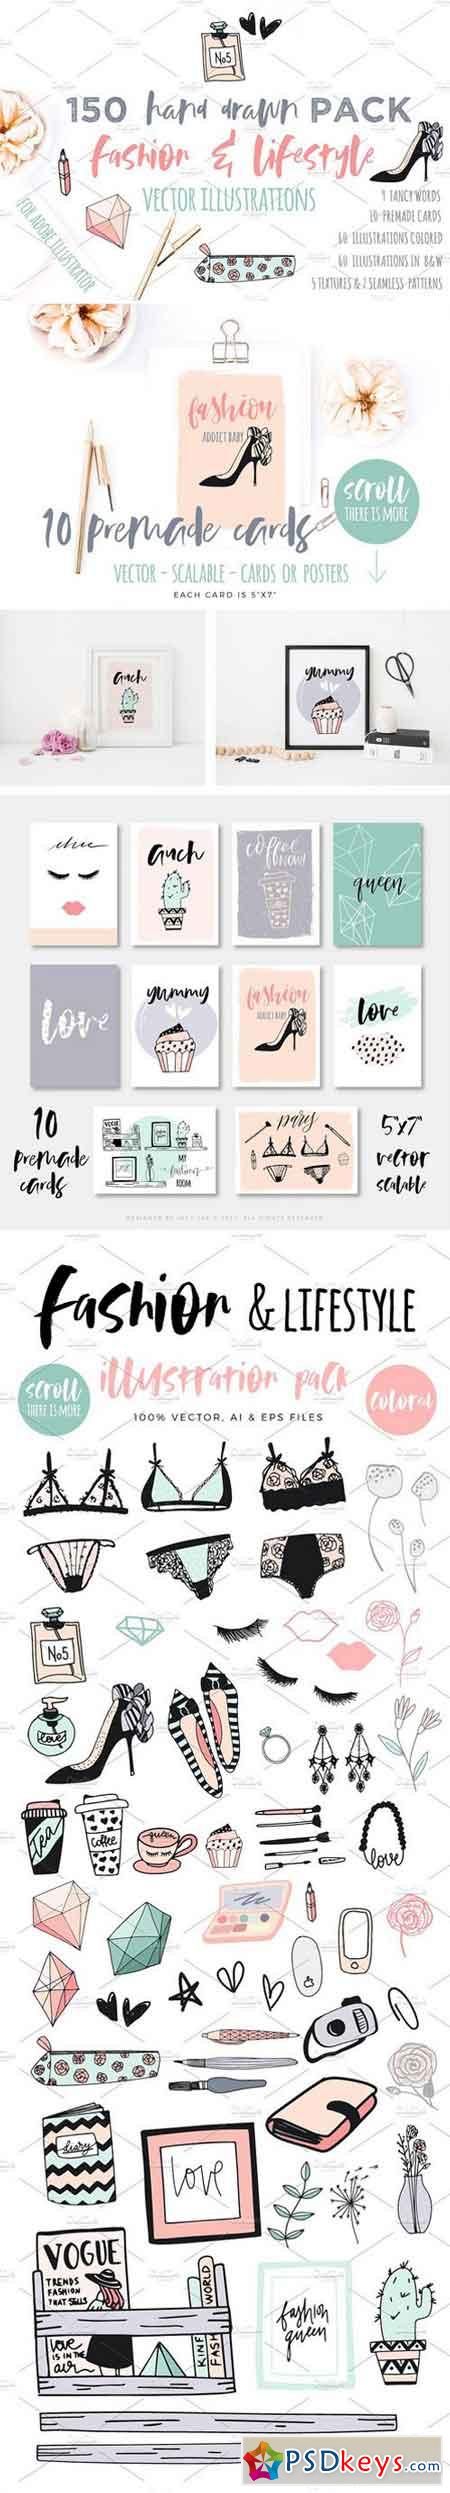 Fashion Lifestyle illustration pack 1547202